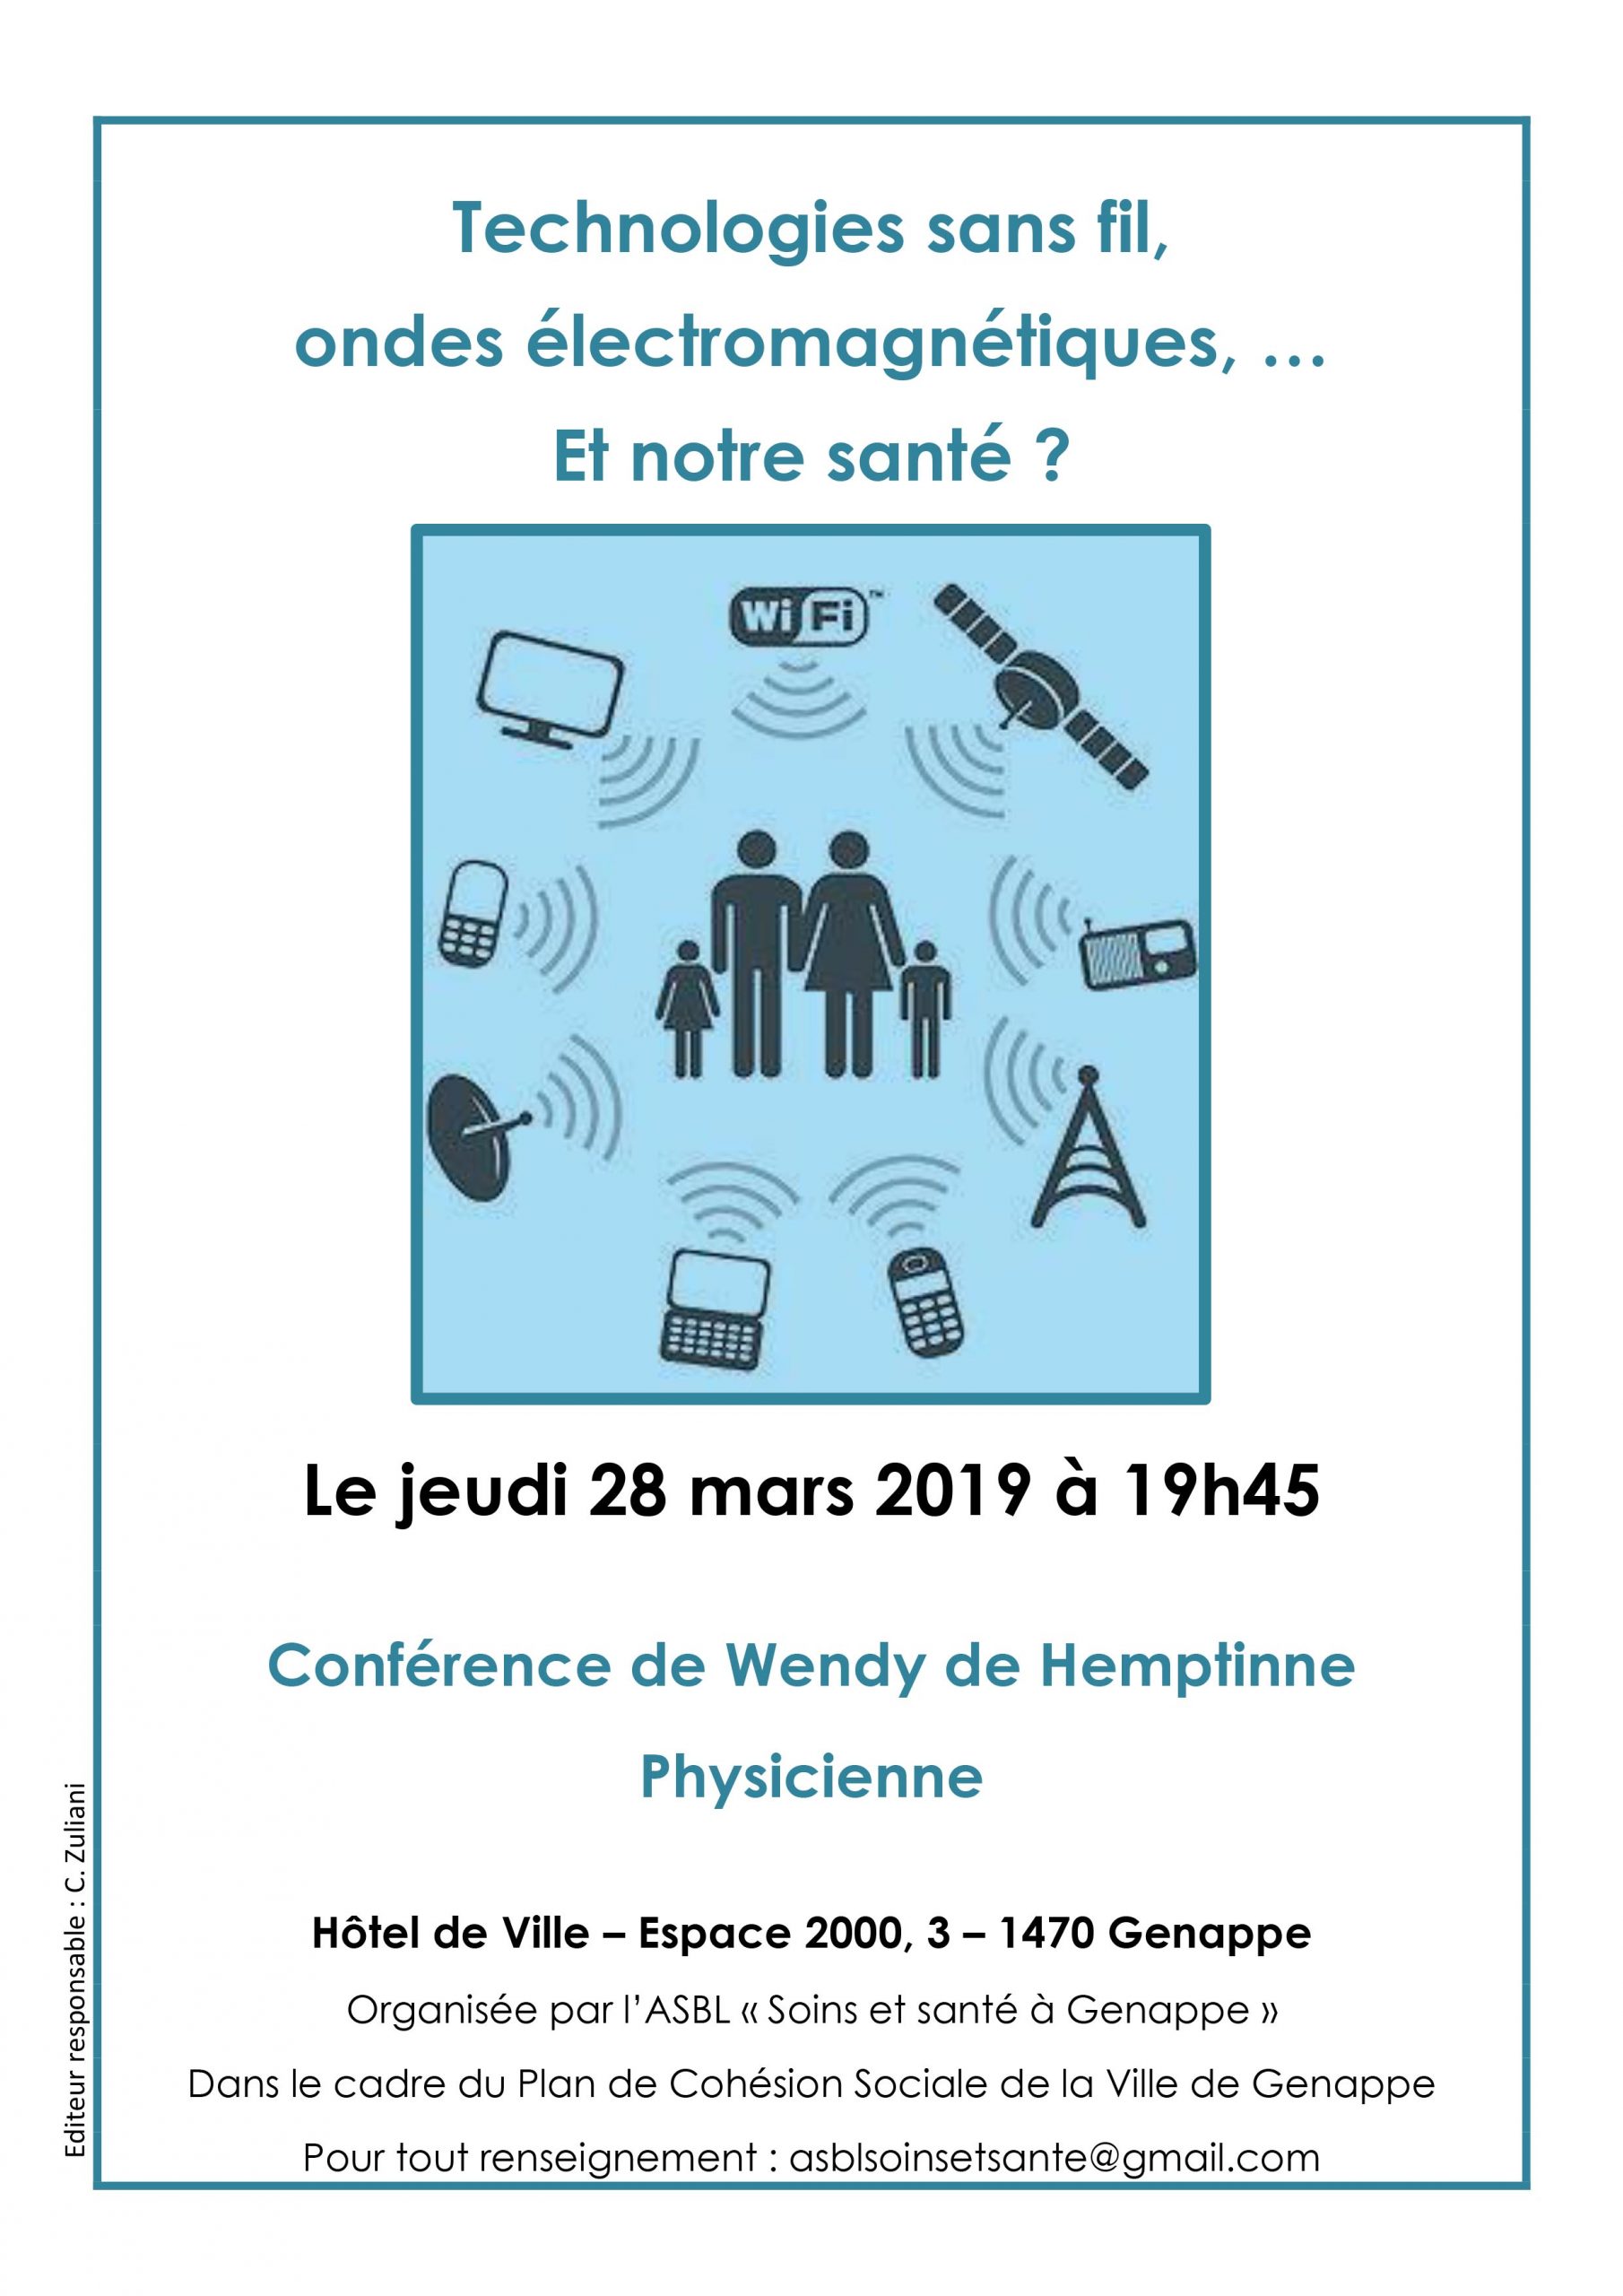 conference-28-mars-2019-technologies-sans-fil-et-notre-sante